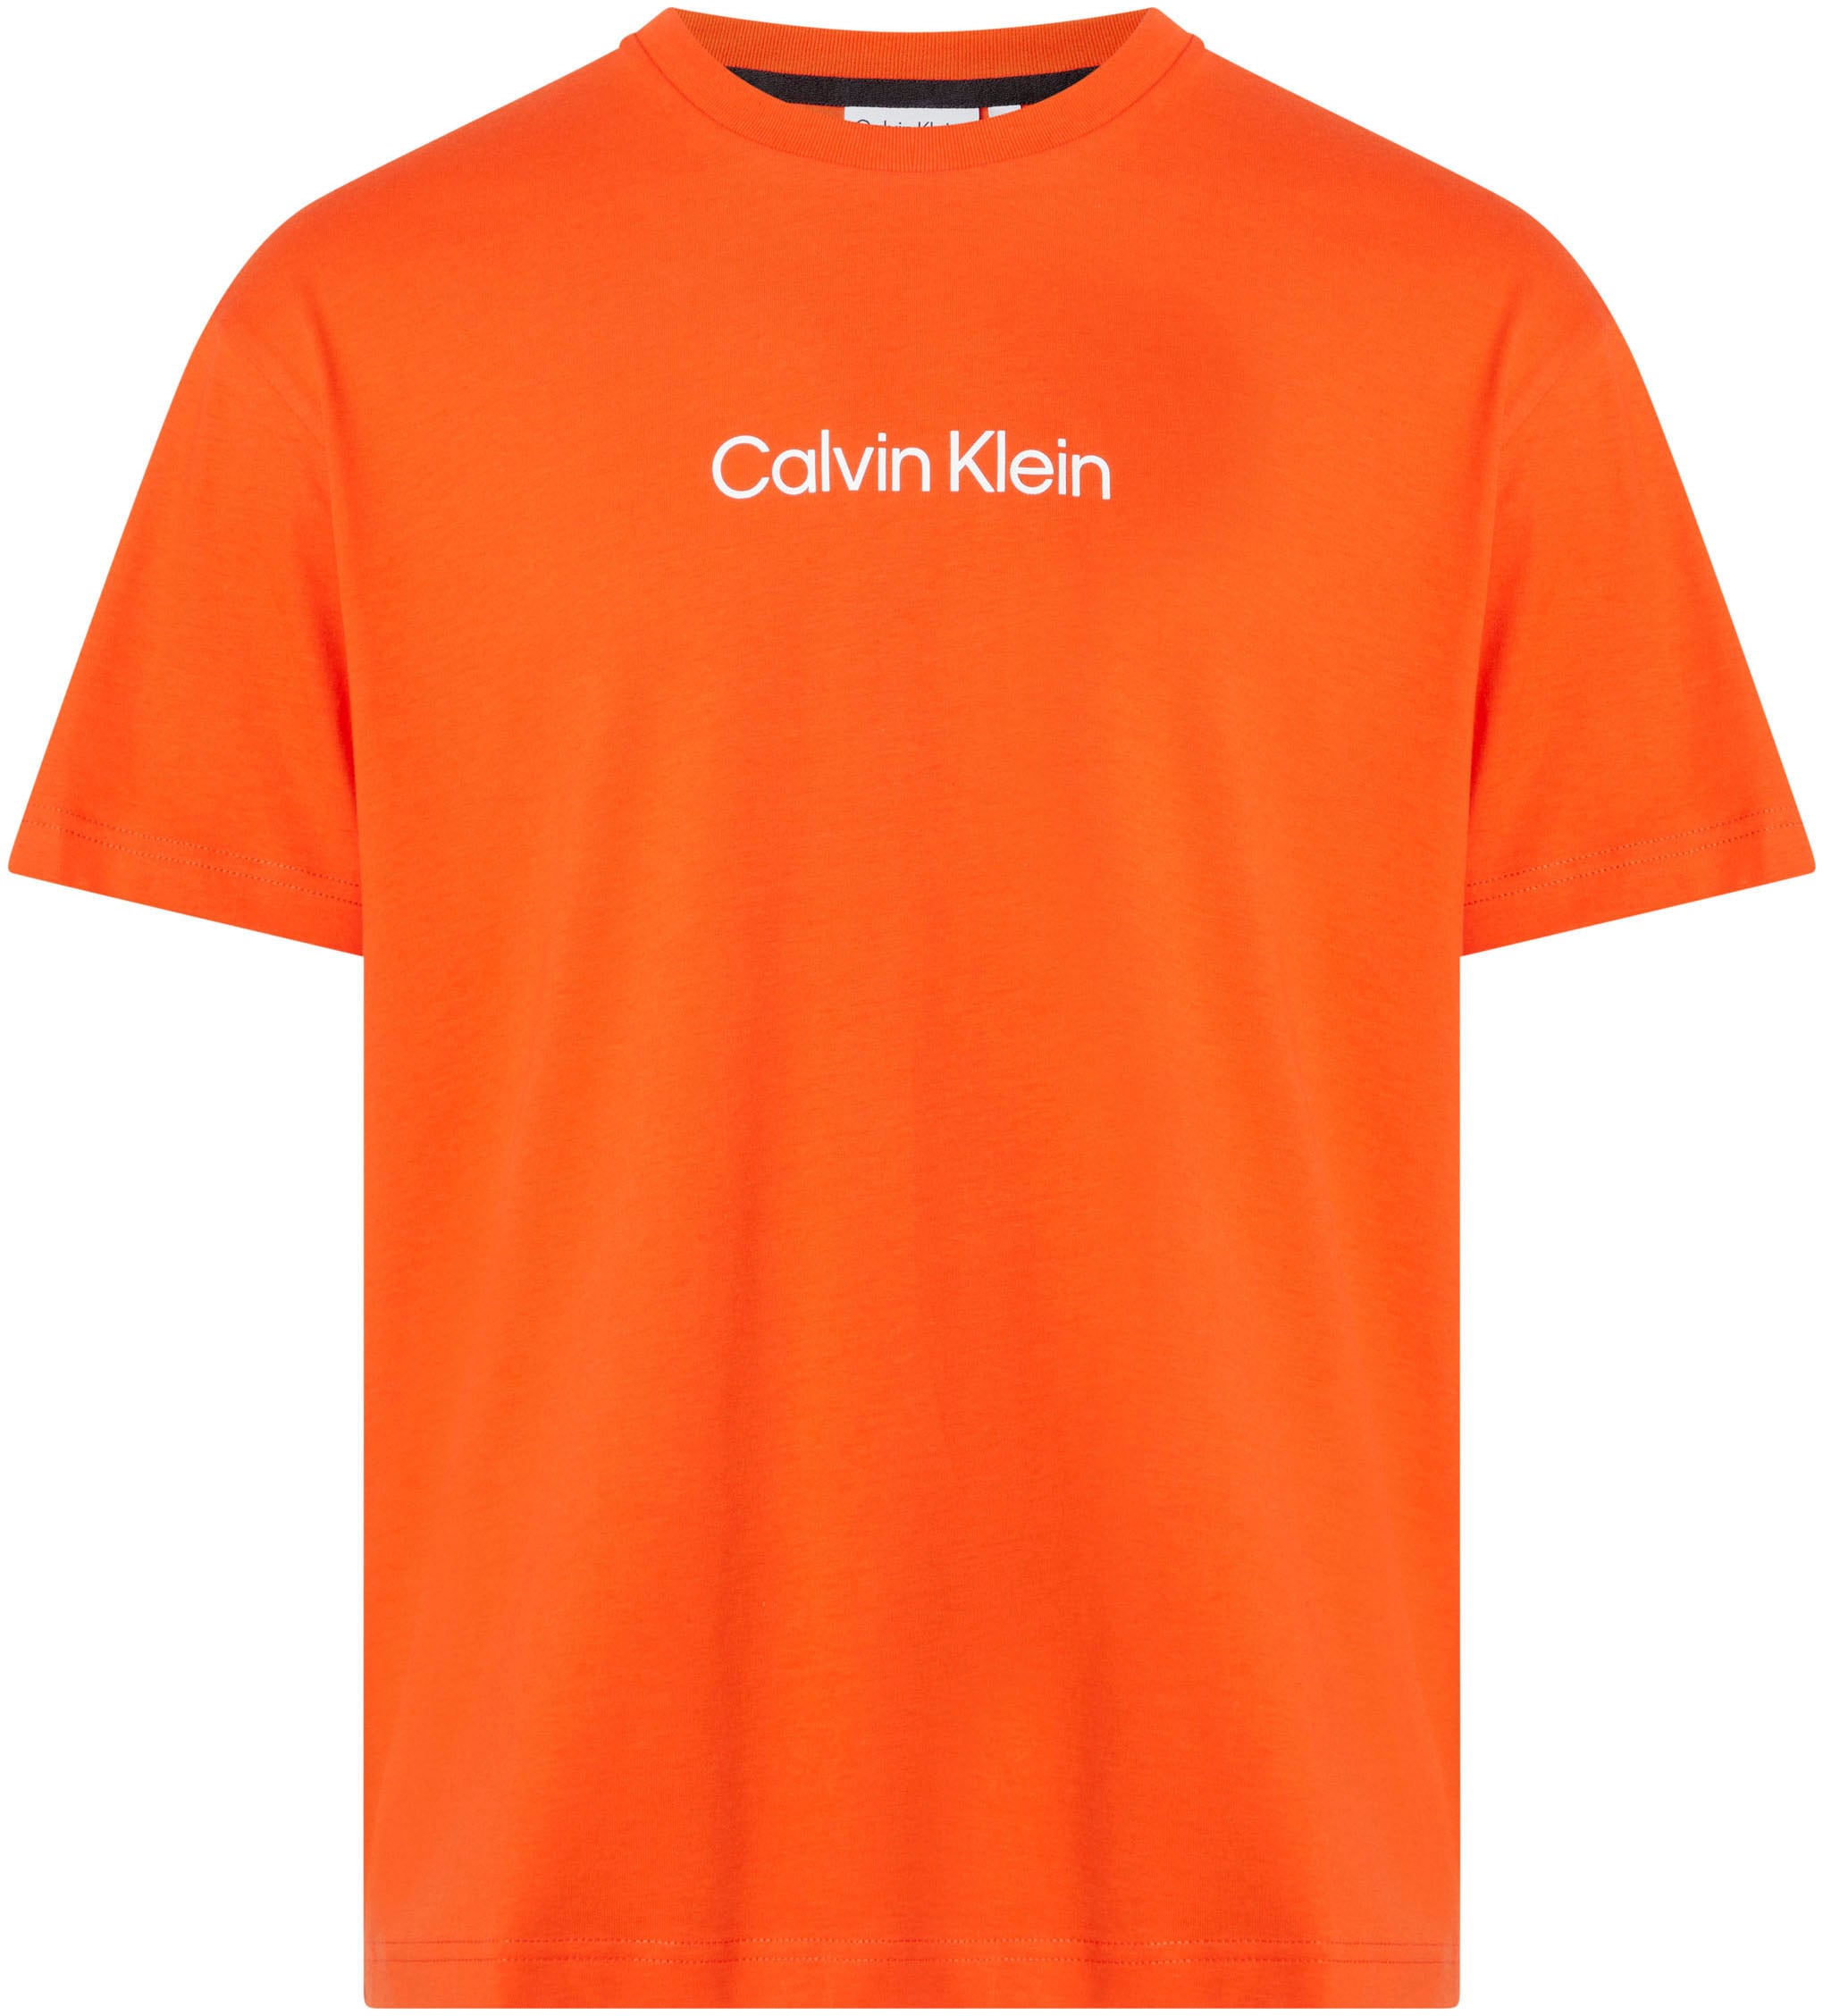 Calvin Klein aufgedrucktem COMFORT mit T-SHIRT«, ♕ bei »HERO Markenlabel T-Shirt LOGO